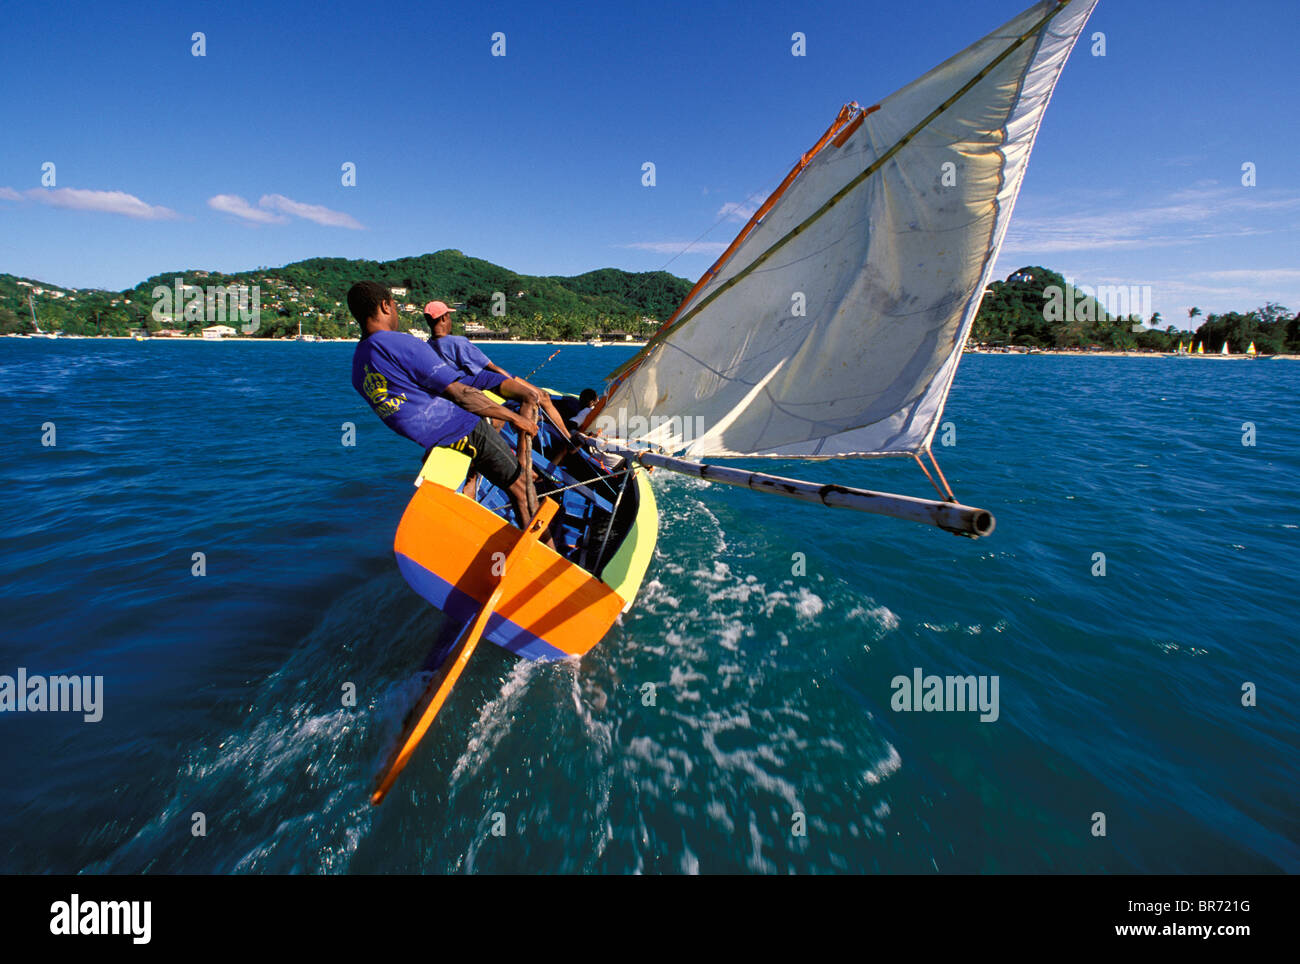 Bateau de travail dur sur le vent pendant la régate annuelle du Festival de la voile, de la Grenade, la Grenade, dans les Caraïbes. Banque D'Images